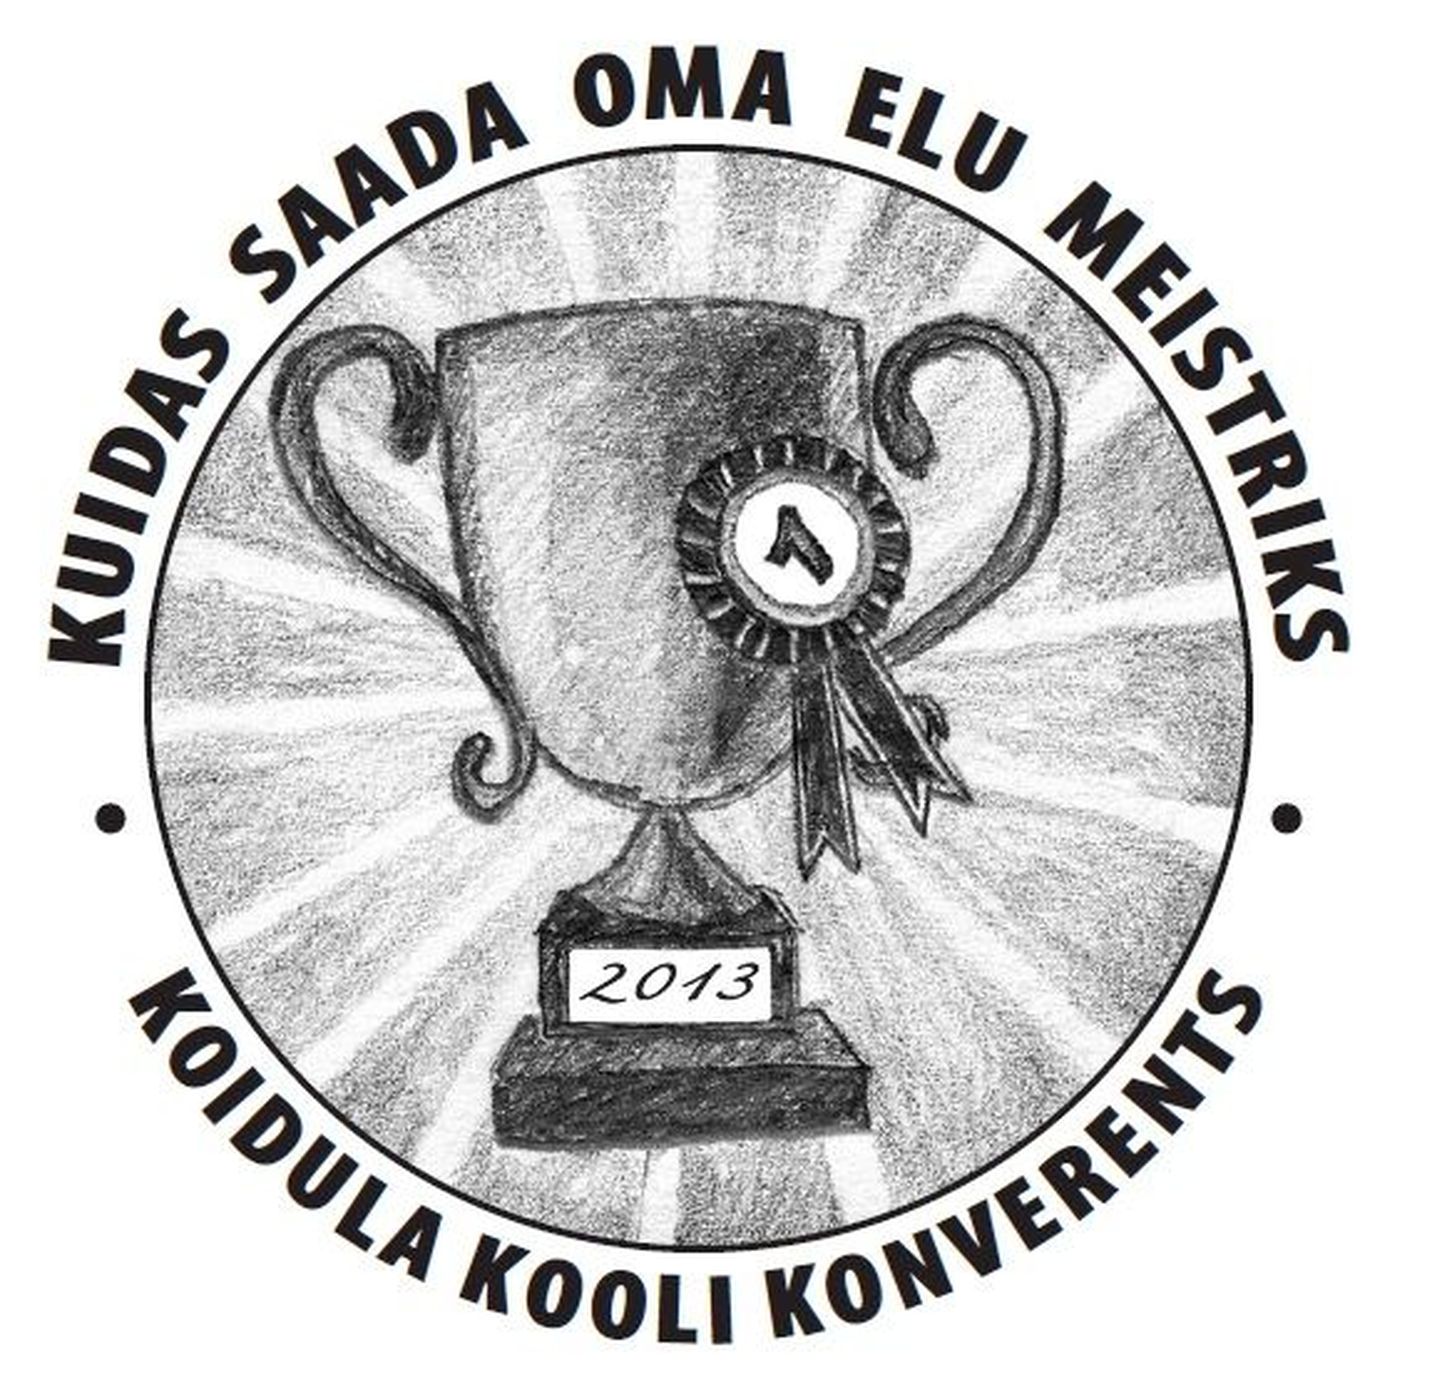 Imbi Esko kujundatud Koidula kooli konverentsi sümboolika.